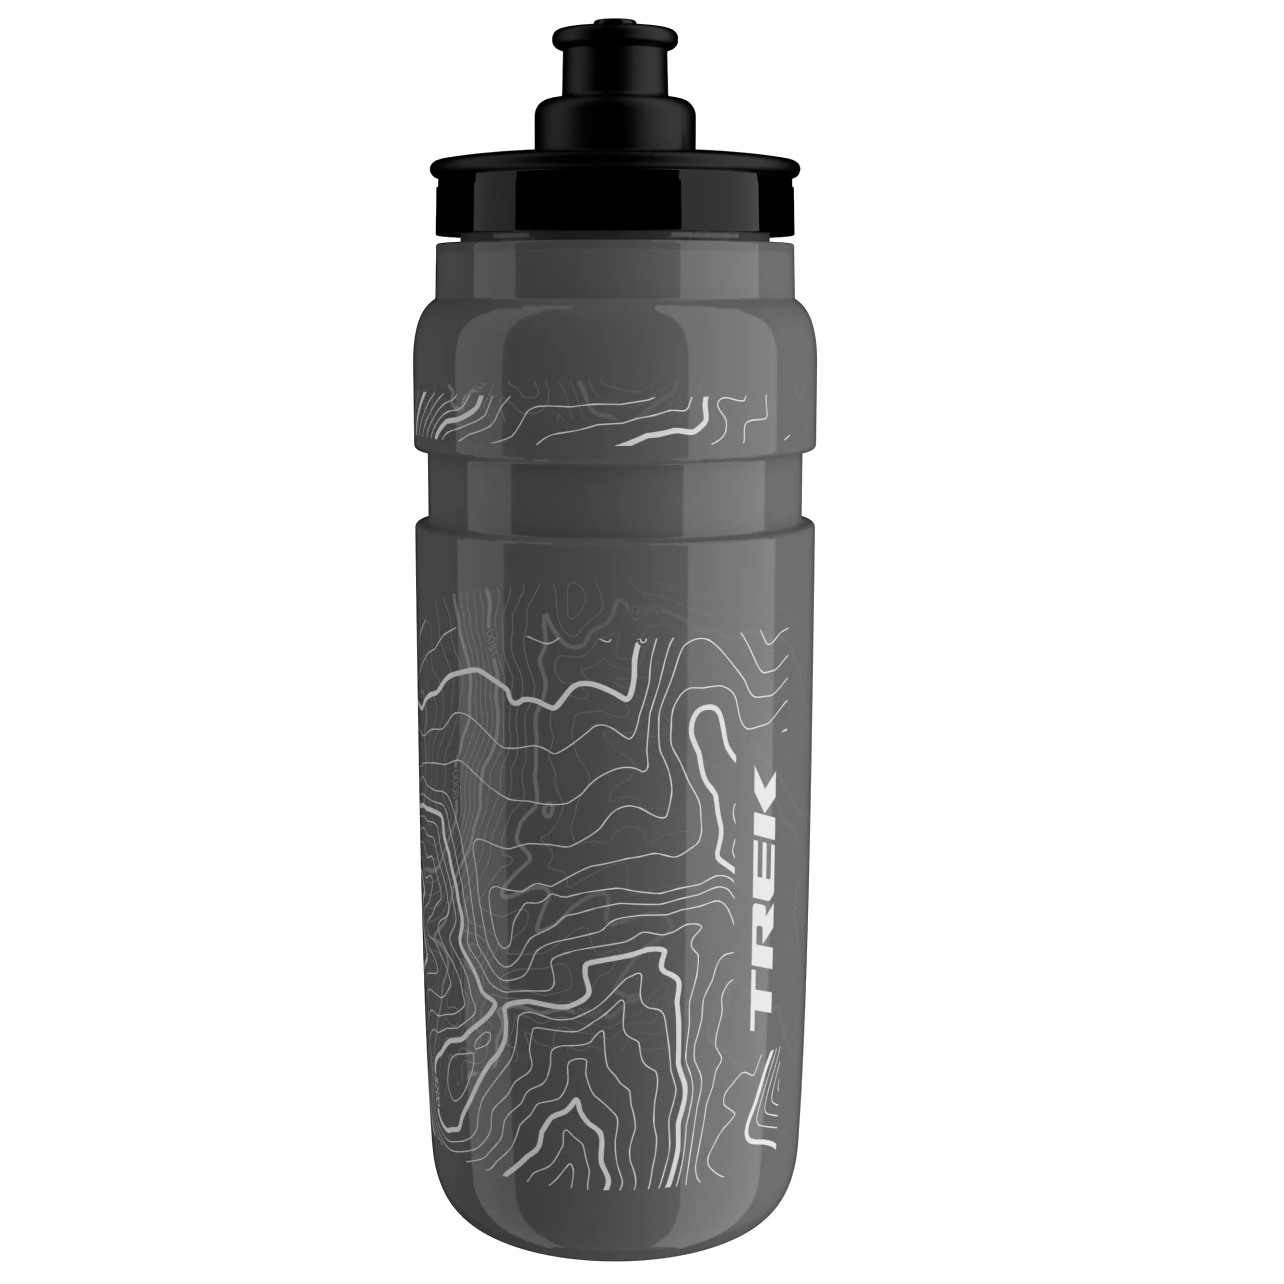 Produktbild von Trek Fly Fahrrad Trinkflasche - 750ml - Grey/White